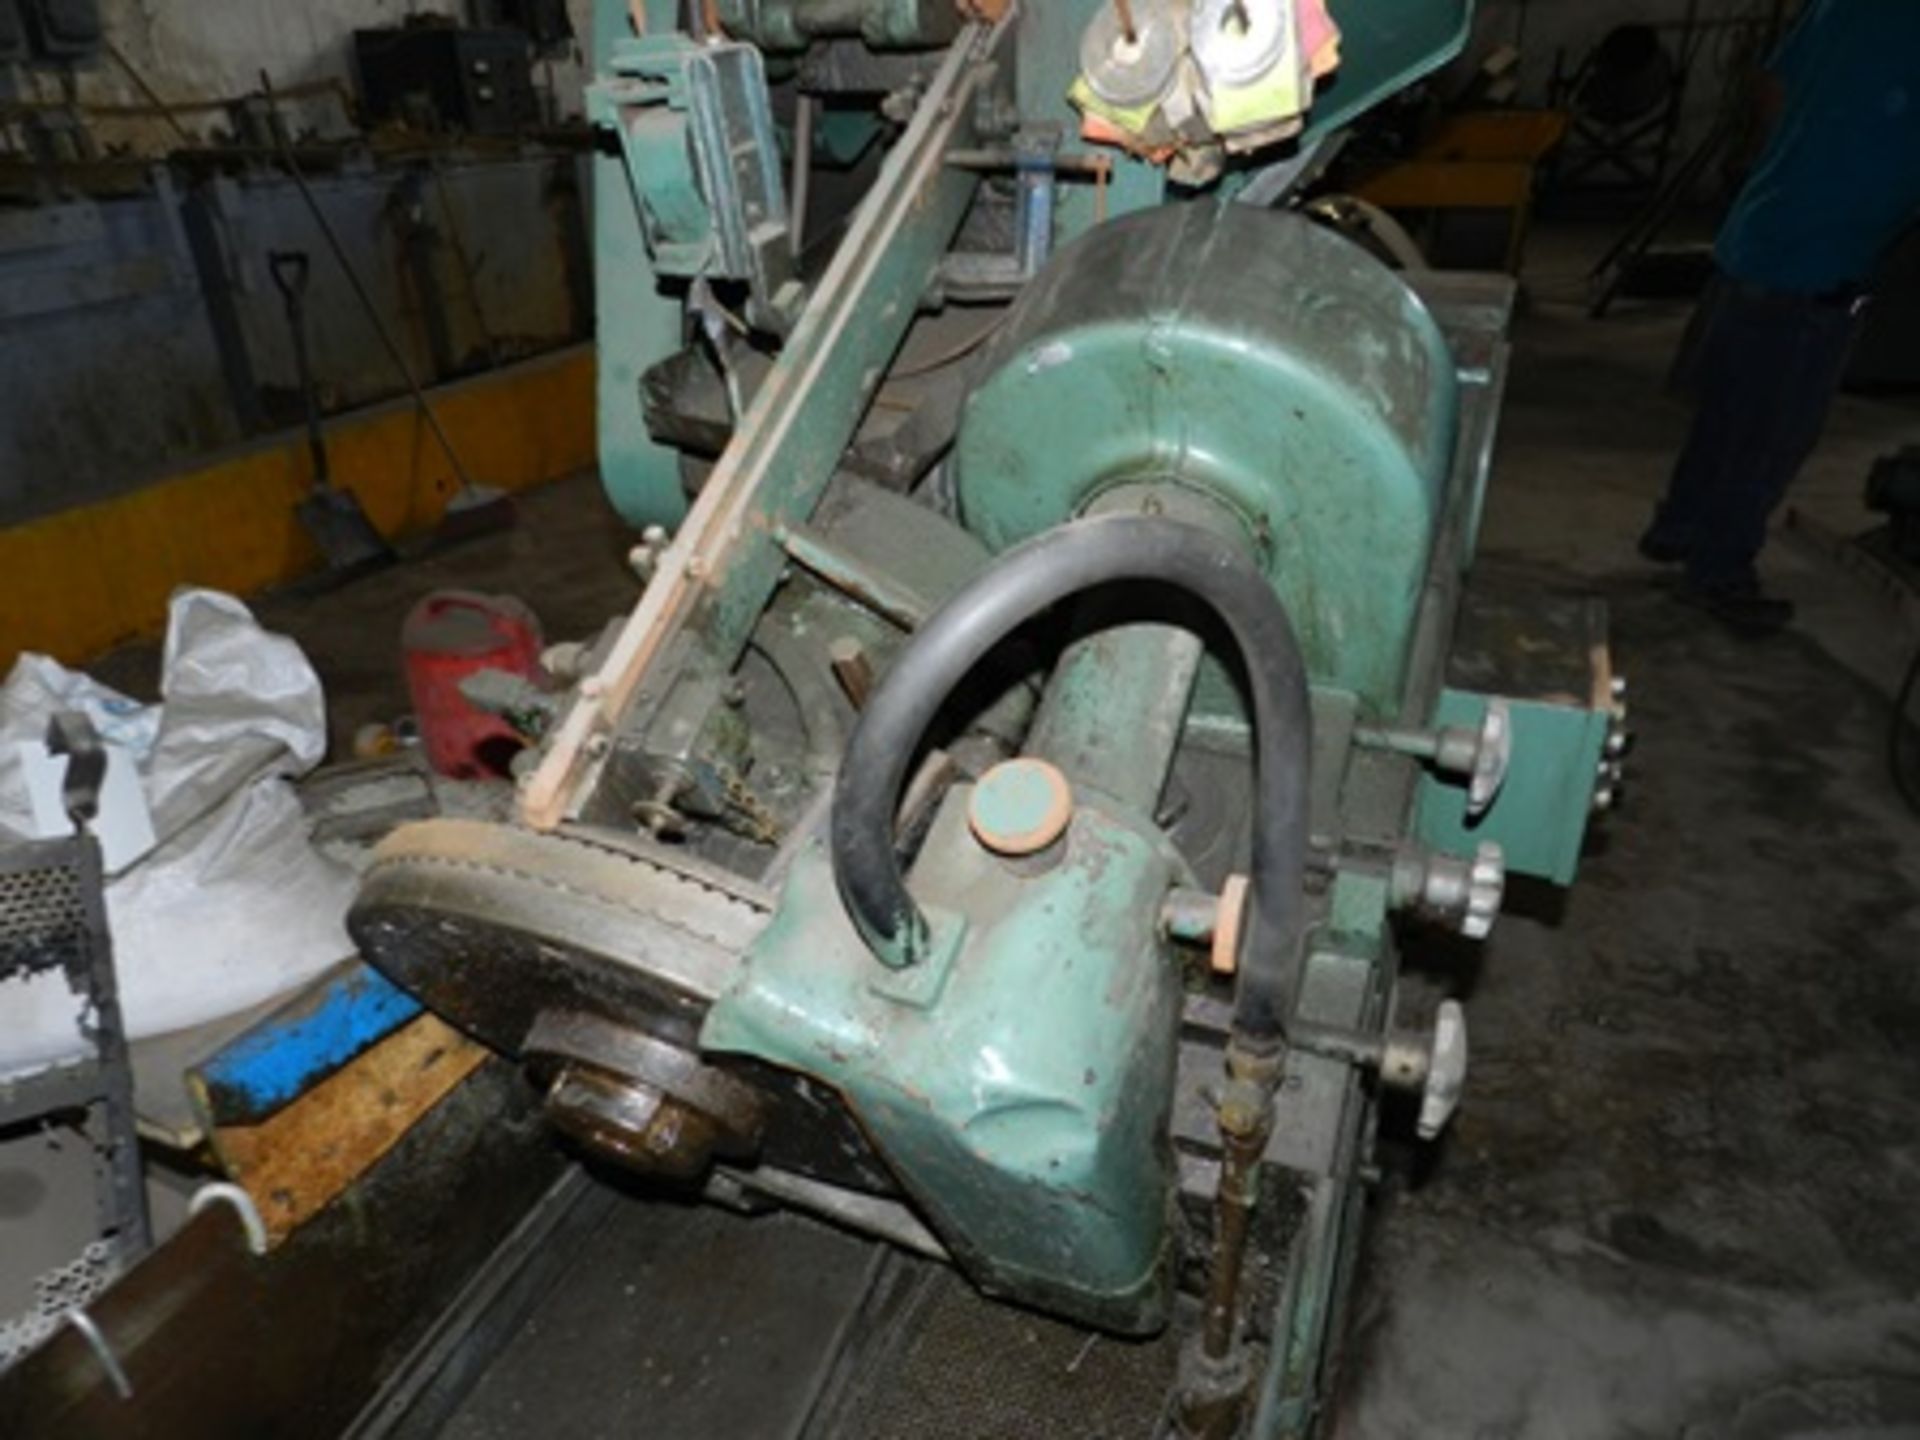 Máquina ranuradora de tornillos marca Waterbury Farrel modelo 5 de 5/16" alta vel. serie 180463-180 - Image 8 of 20